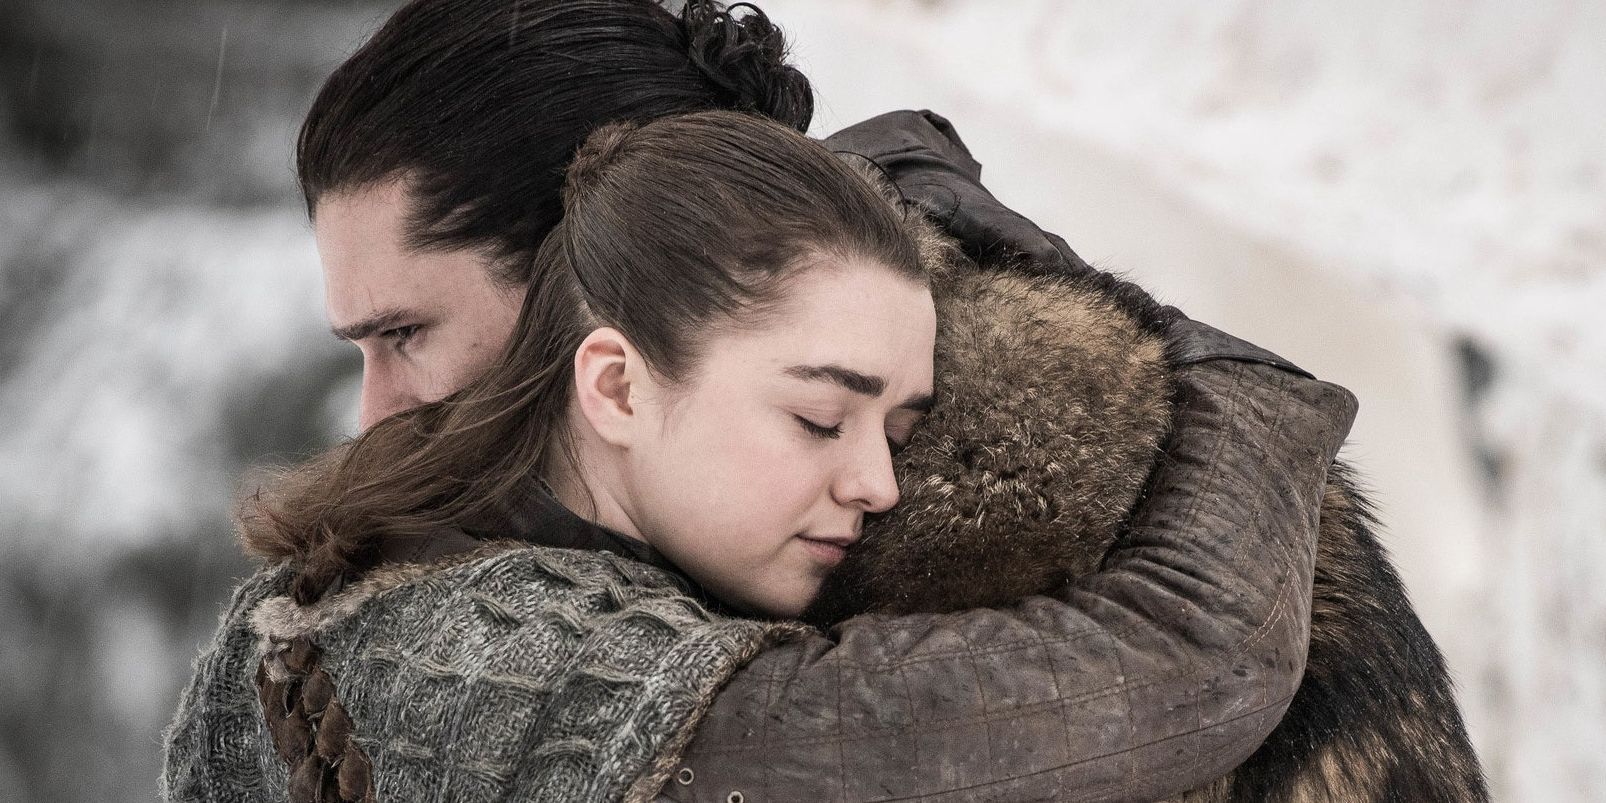 Arya abraçando Jon em um campo nevado em Game of Thrones.